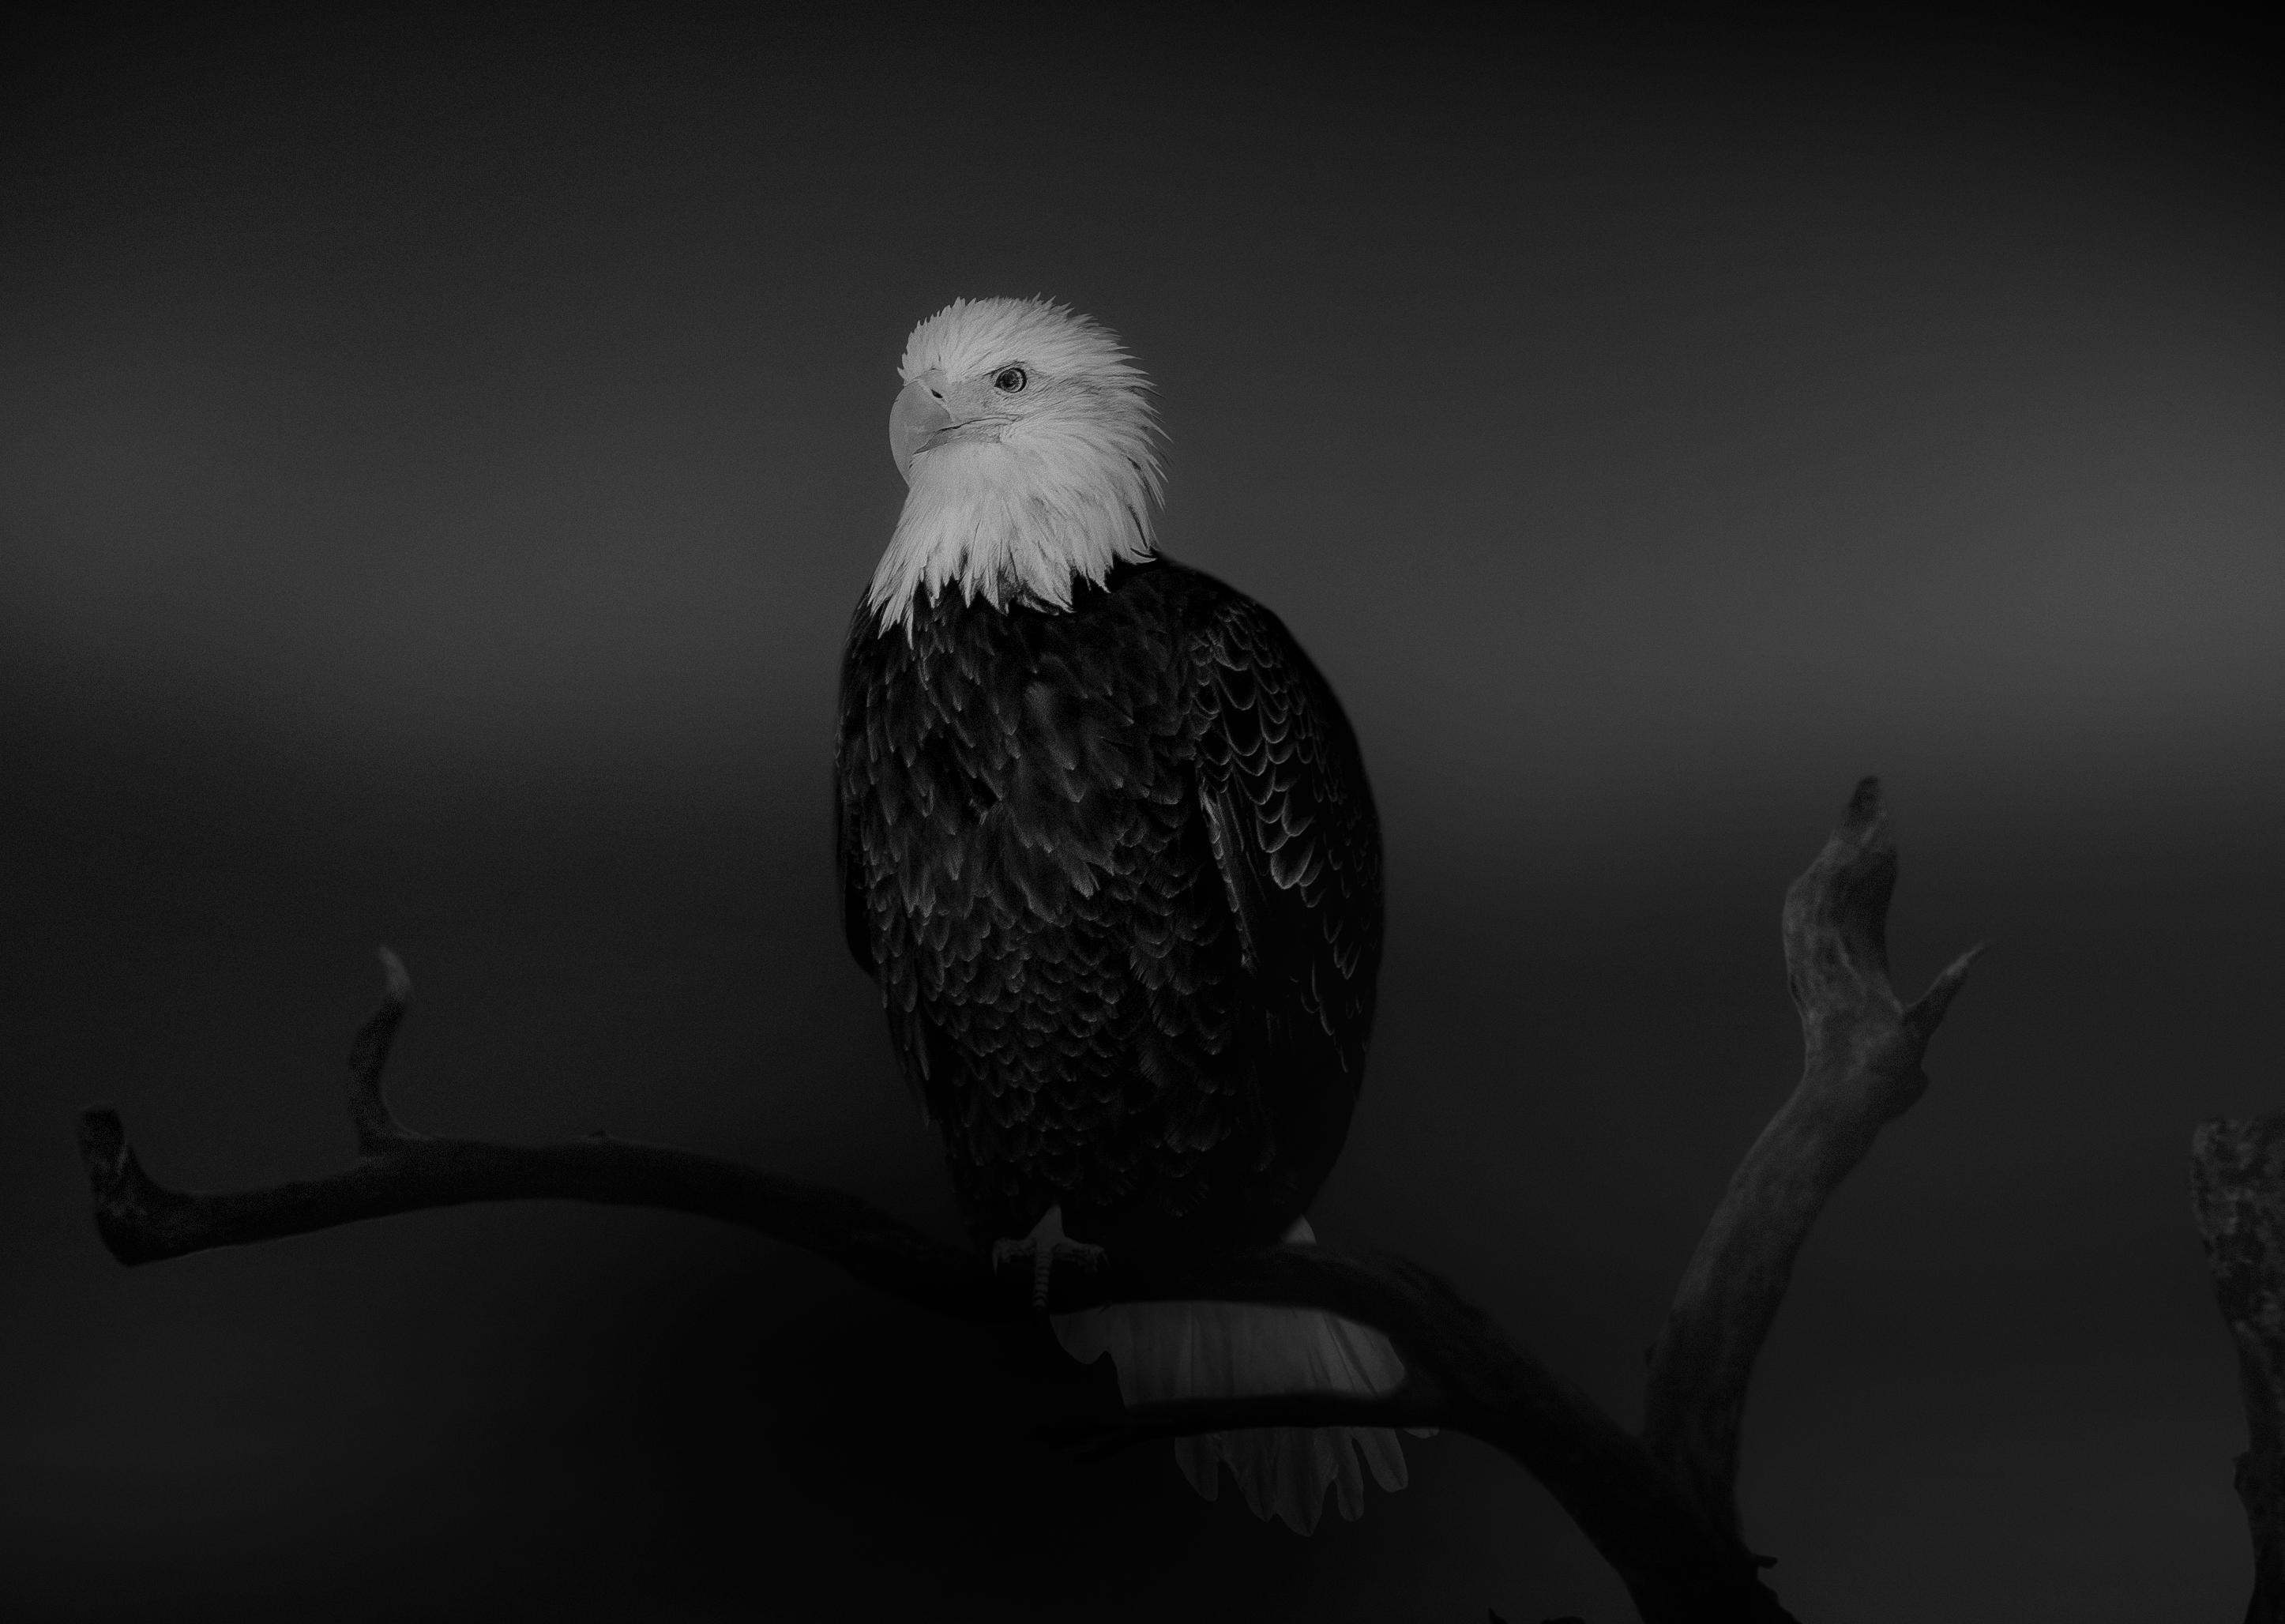 Black and White Photograph Shane Russeck - "Bald Eagle" 36x48 - Photographie en noir et blanc, photographie non signée  Imprimer